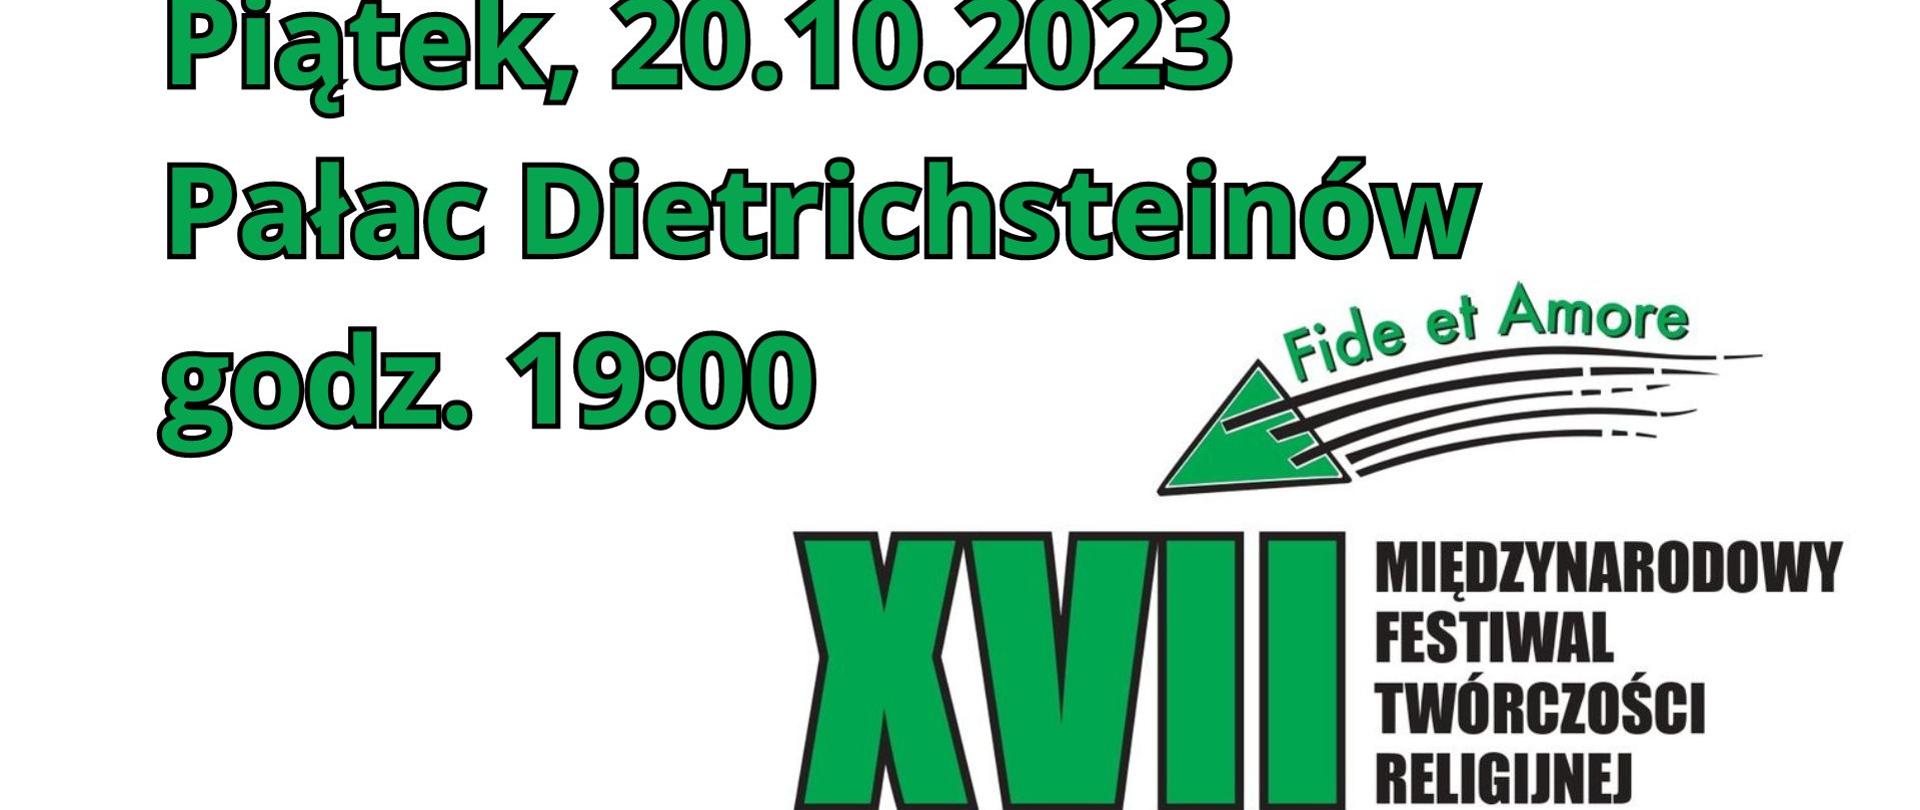 Biały plakat z zielonym napisem "Piątek, 20.10.2023, Pałac Dietrichsteinów. godz. 19:00 Fide et Amore XVII Międzynarodowy Festiwal Twórczości Religijnej"